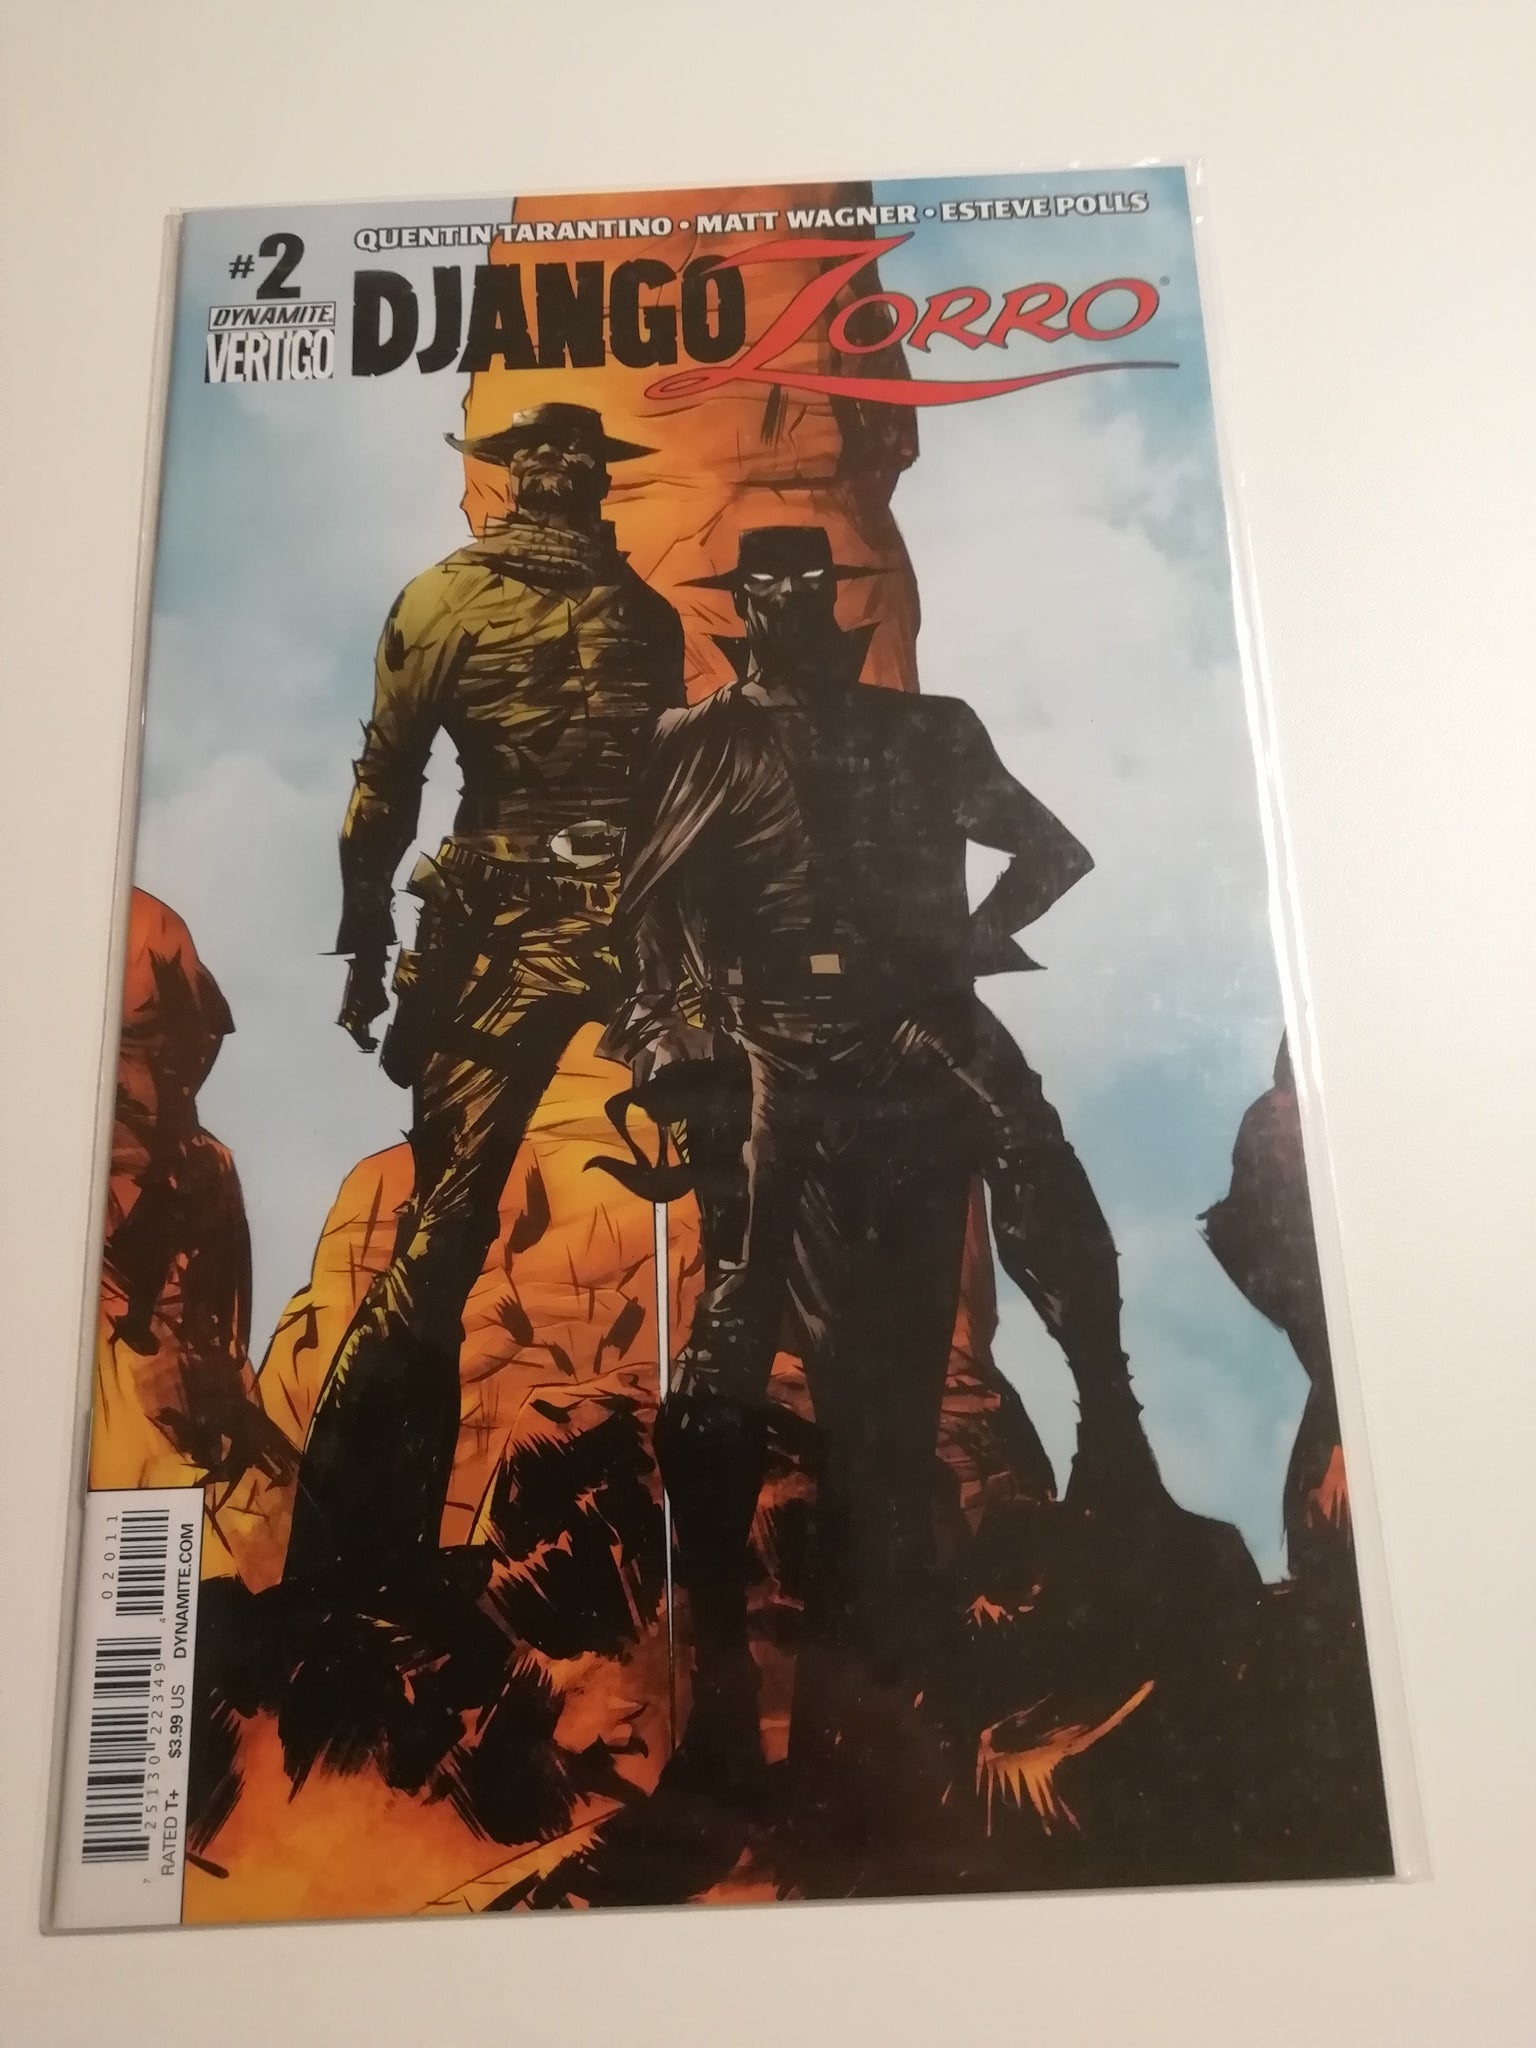 Django Zorro #2 VF/NM